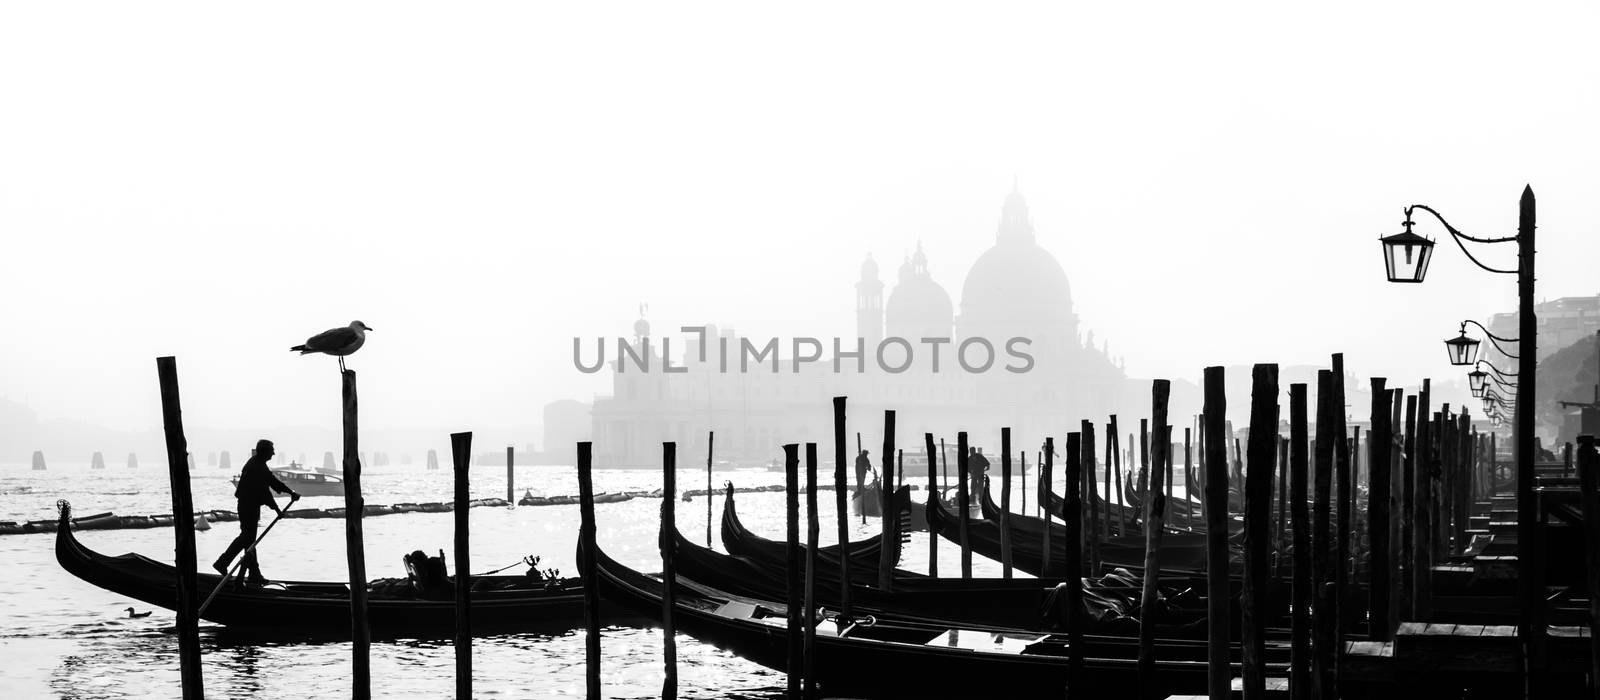 Romantic Venice, Italy by kasto